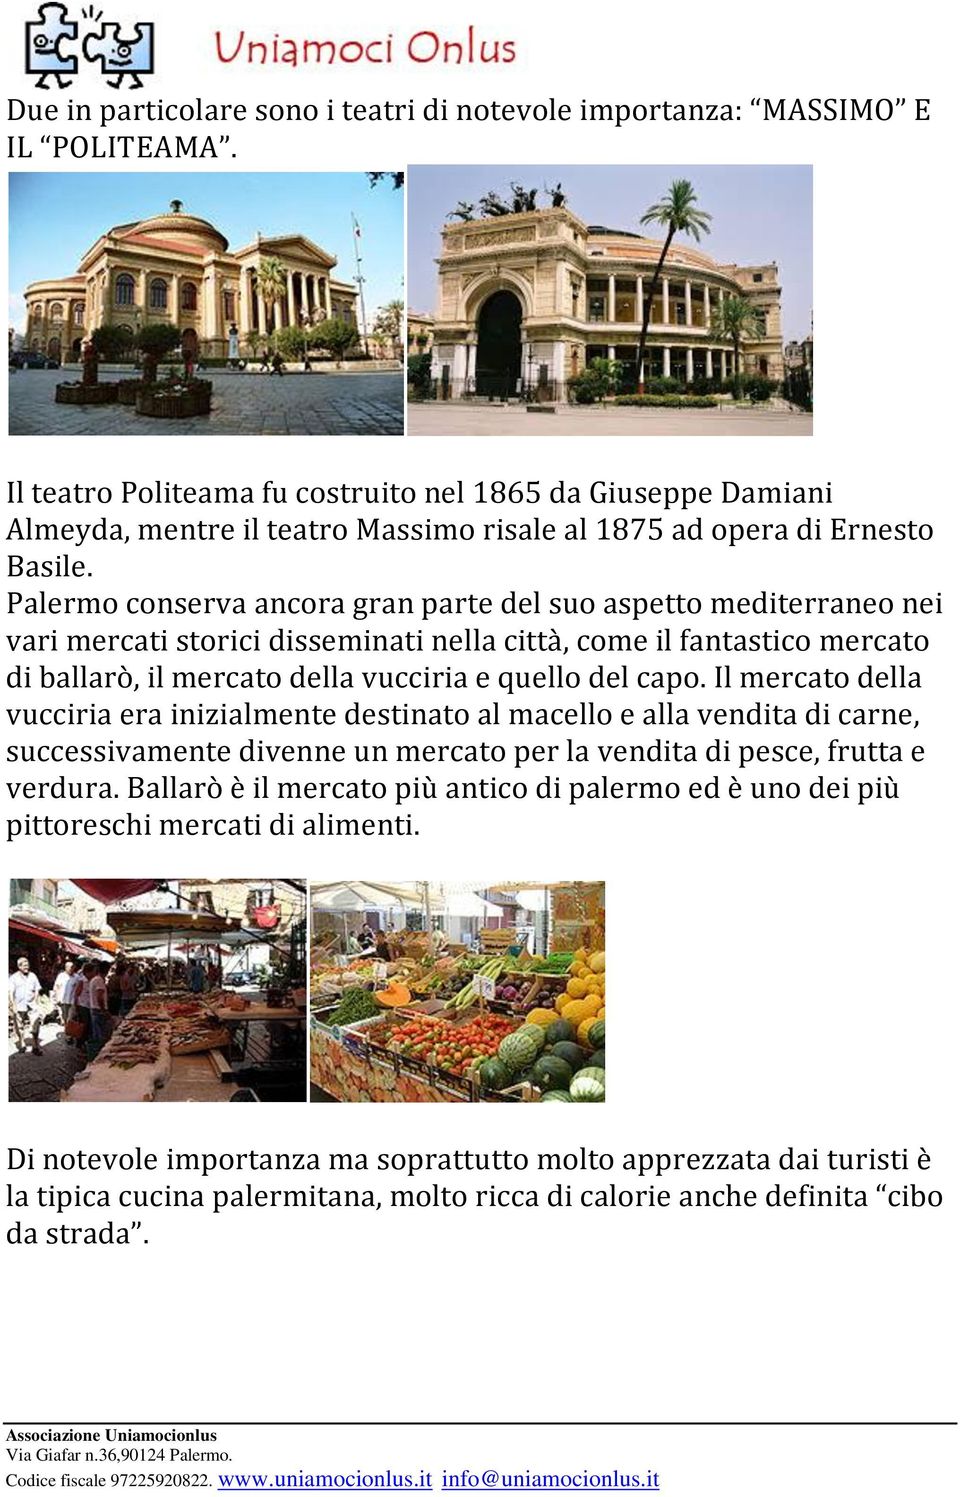 Palermo conserva ancora gran parte del suo aspetto mediterraneo nei vari mercati storici disseminati nella città, come il fantastico mercato di ballarò, il mercato della vucciria e quello del capo.